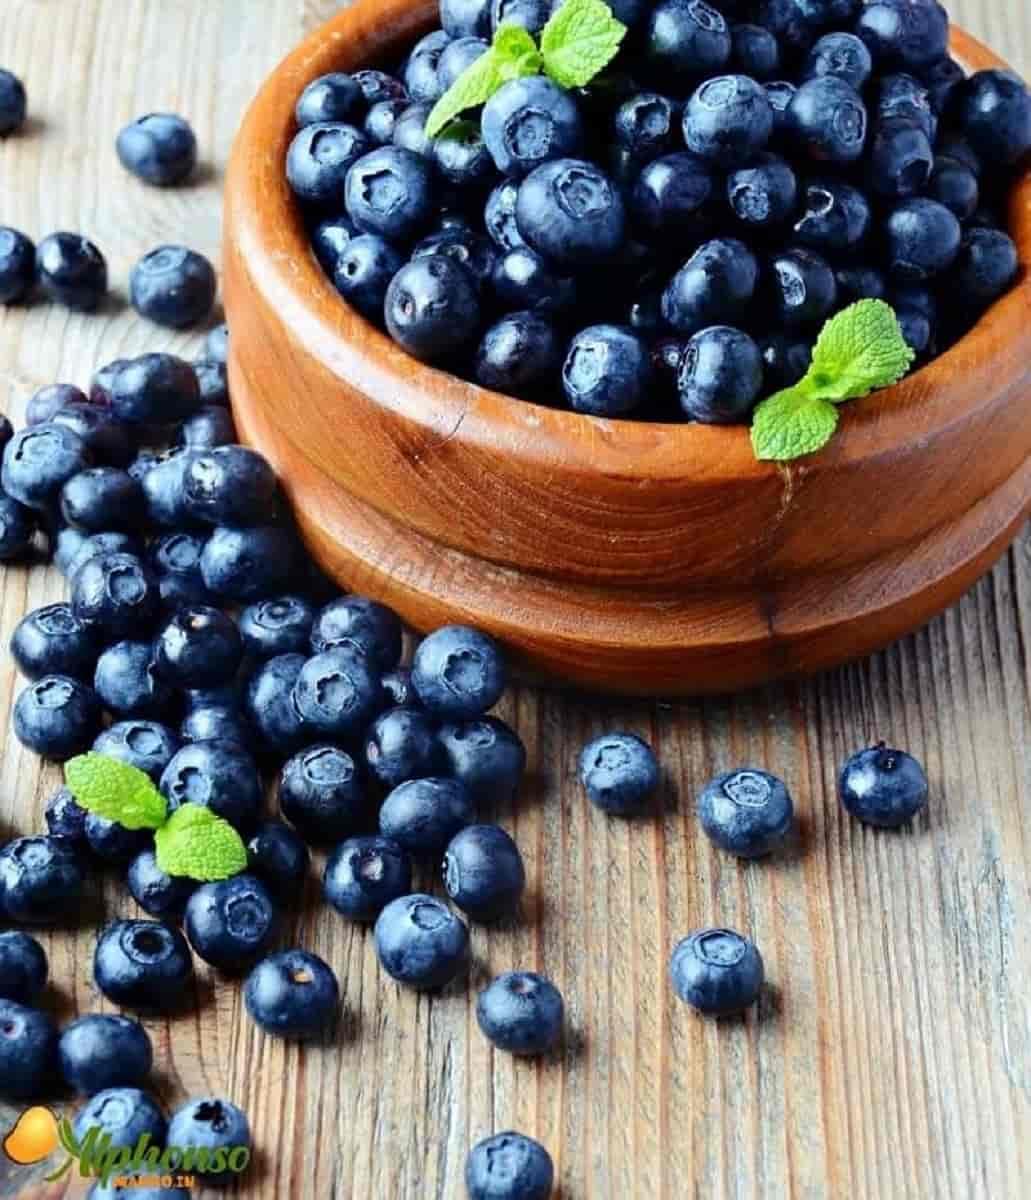 Buy Fresh Blueberries Online - AlphonsoMango.in